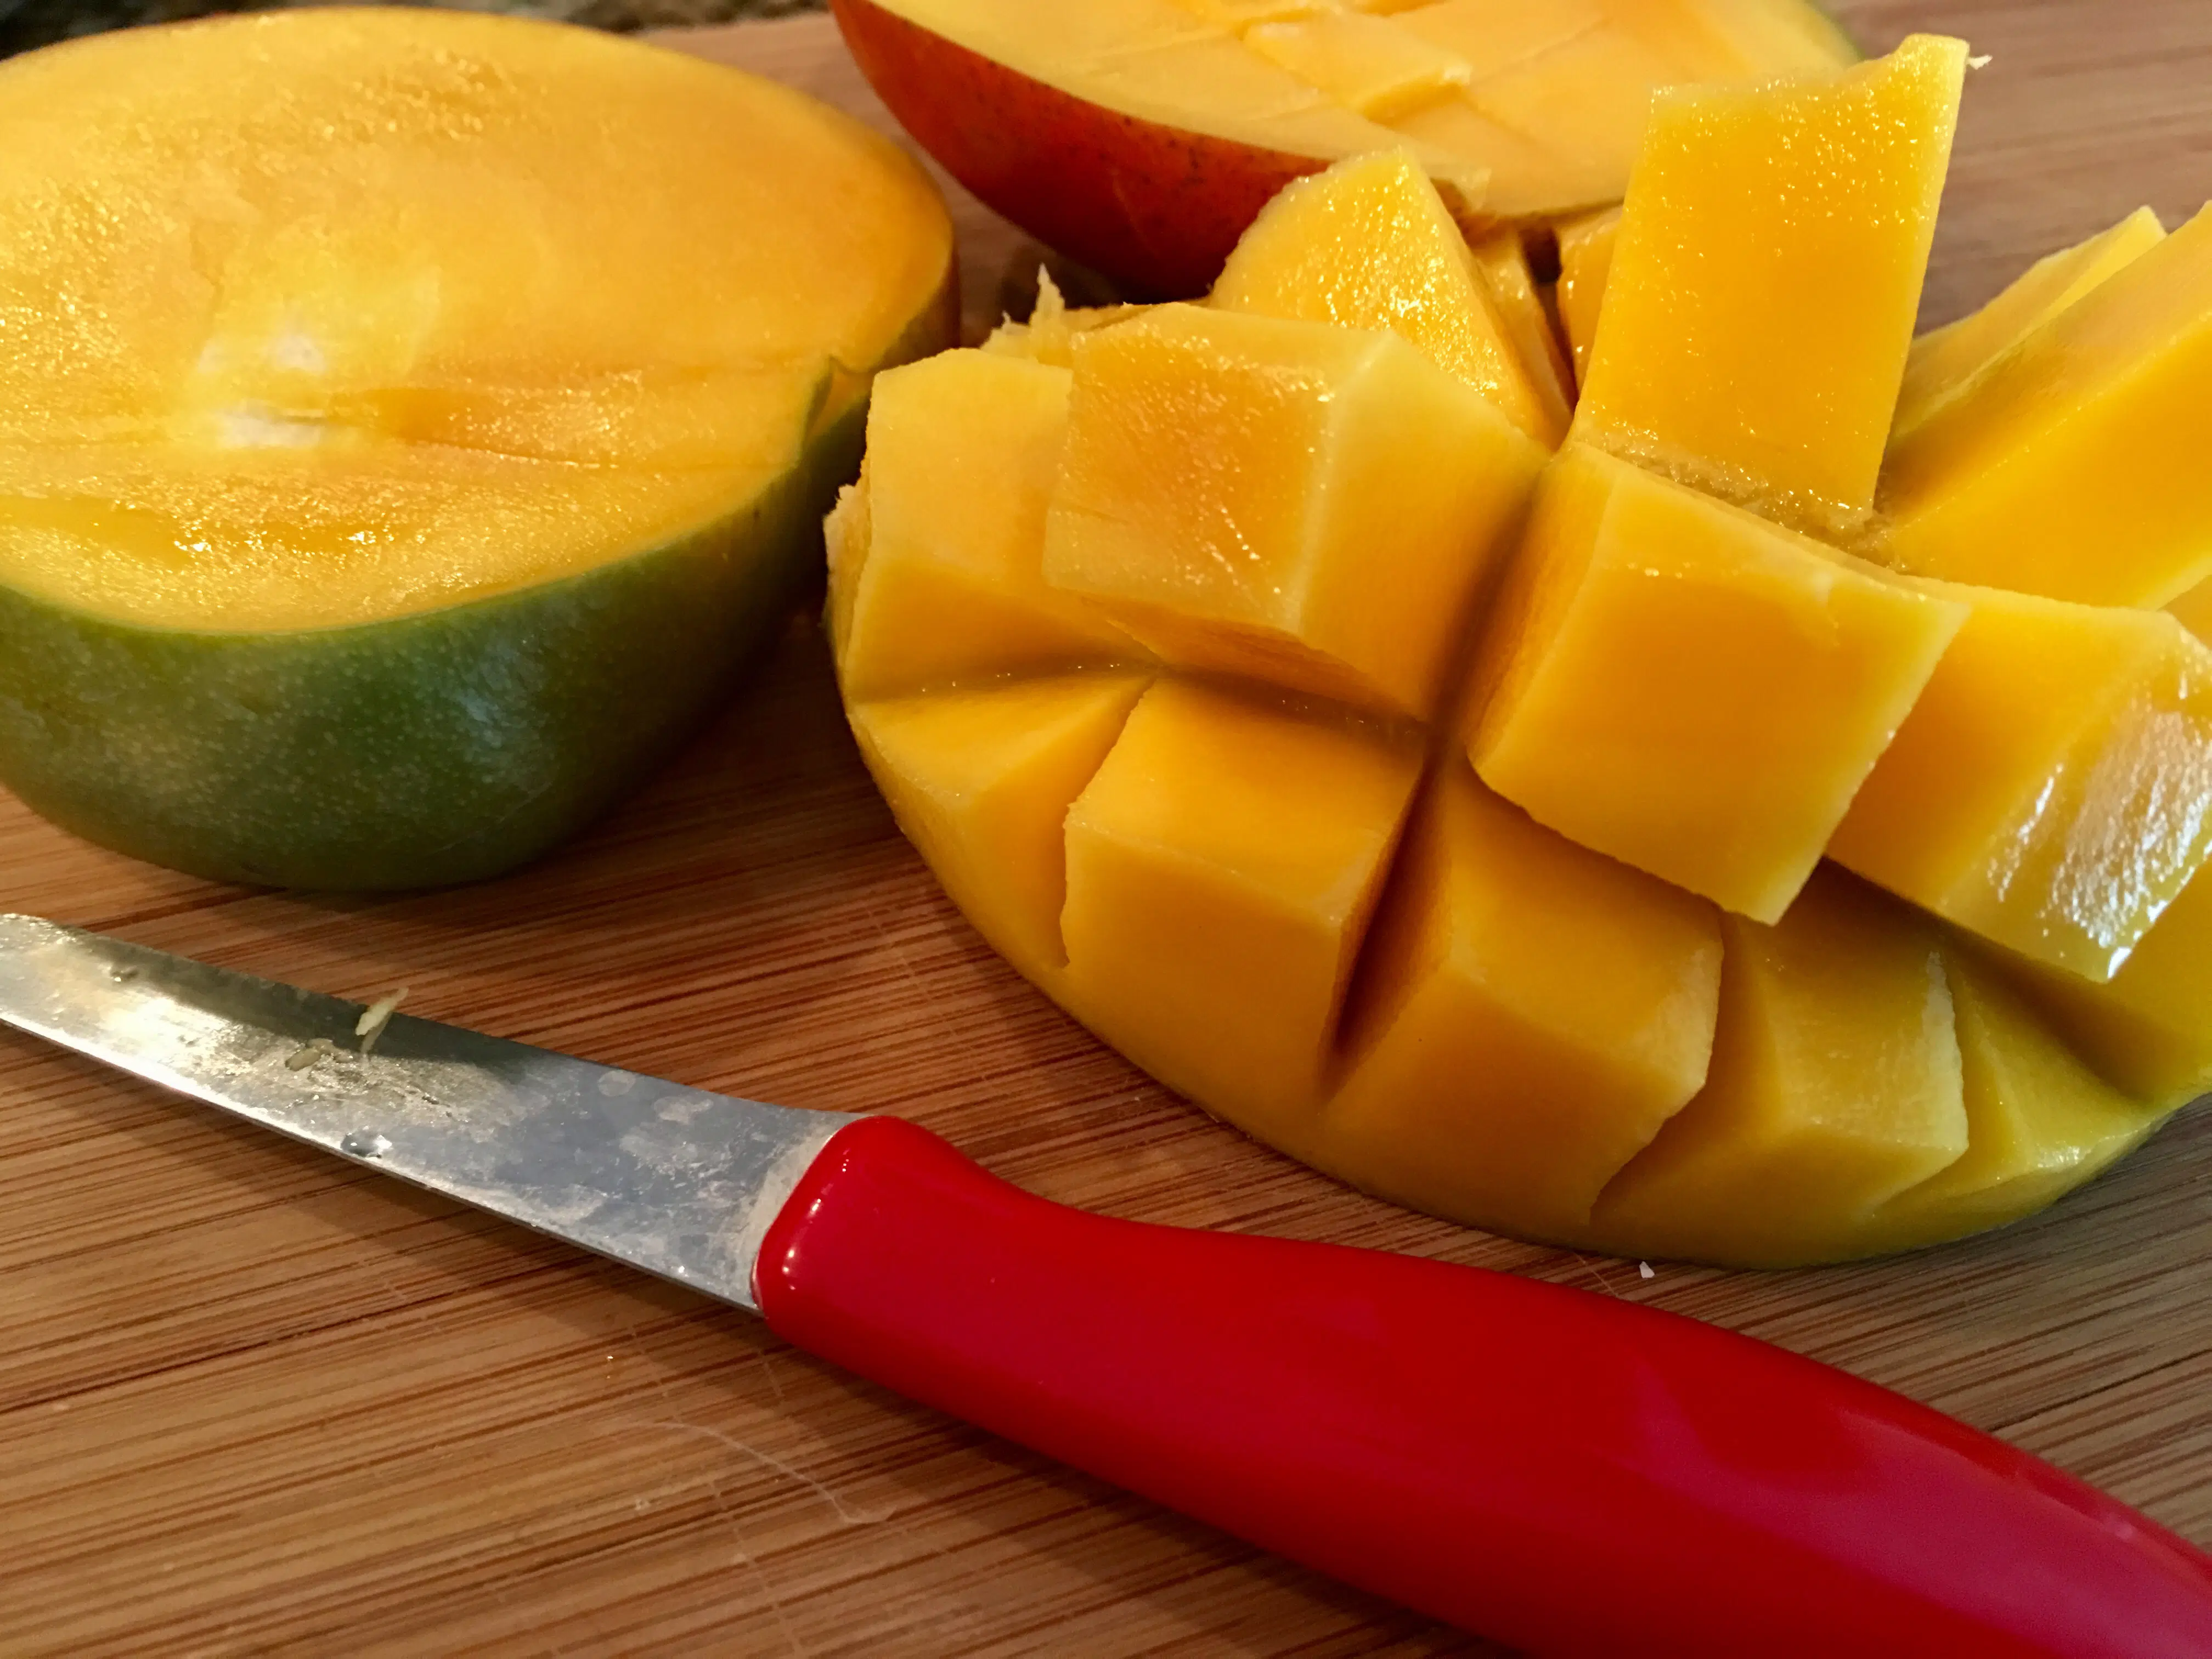 cutting a fresh mango